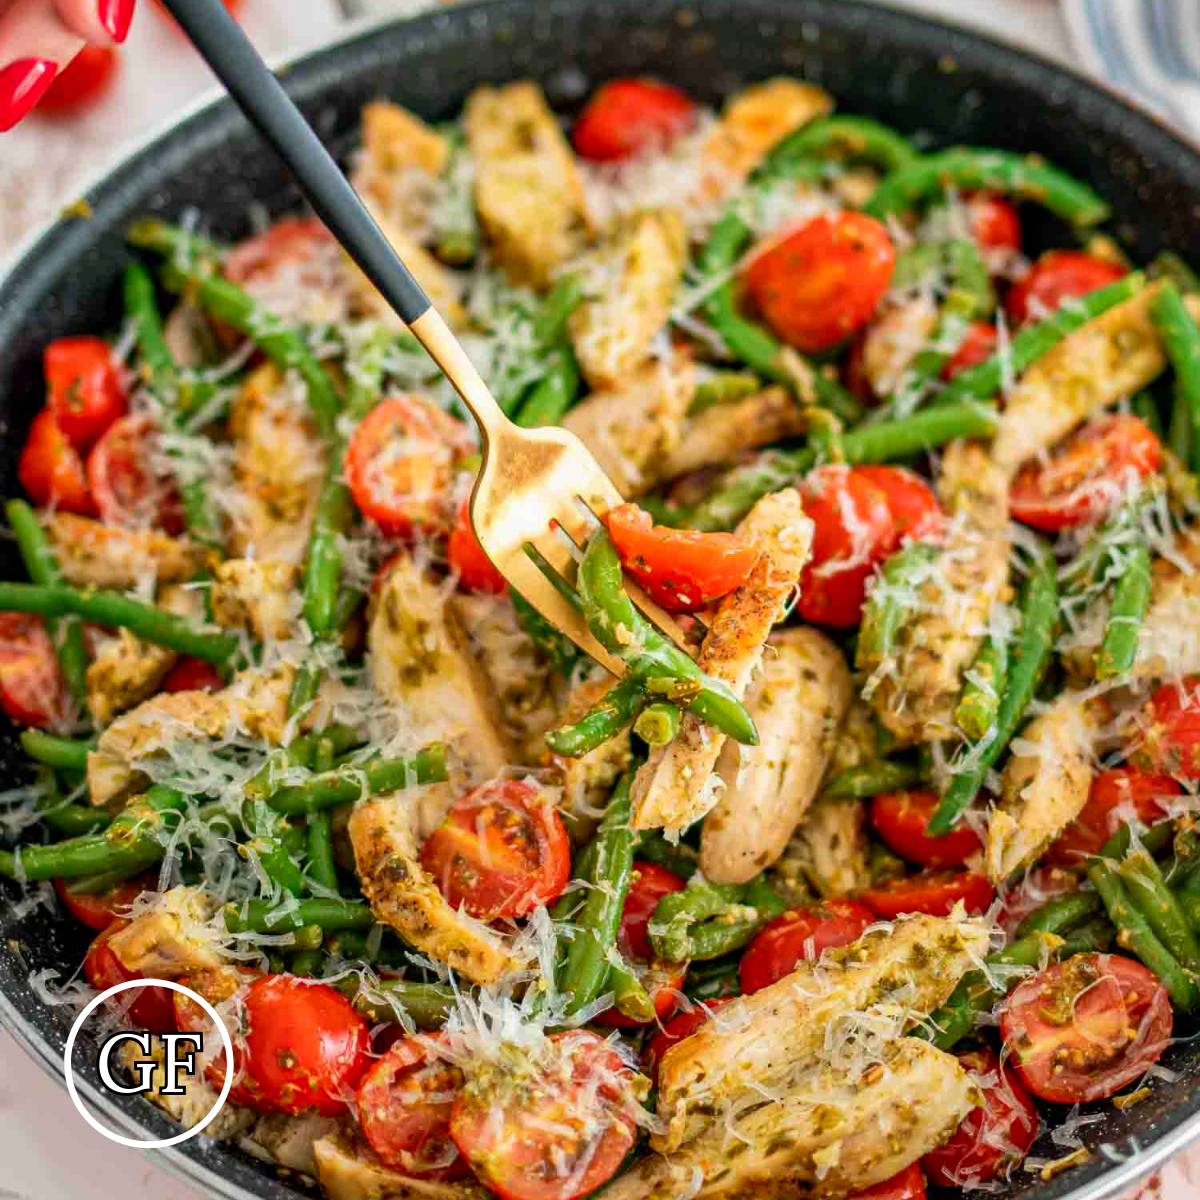 *Grilled Chicken Pesto & Veggies Image